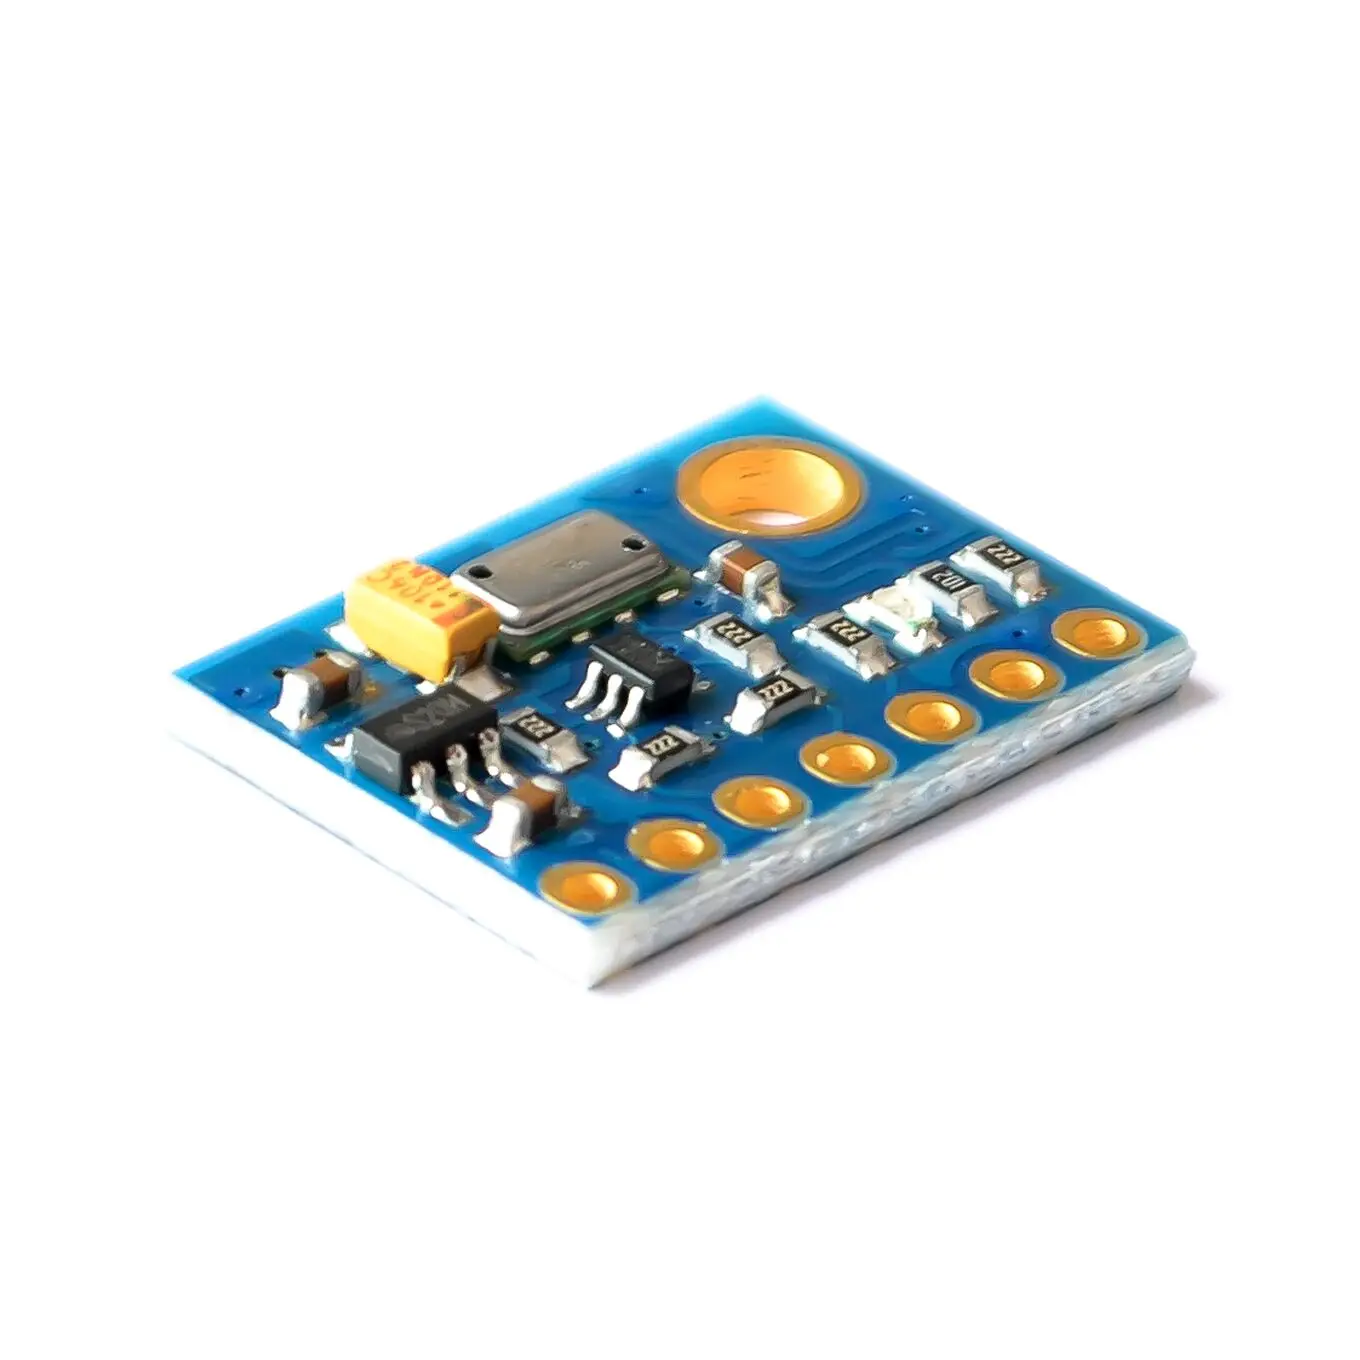 MS5611-01BA03 GY-63 MS5611 атмосферного давления сенсор модуль электронный DIY доска IIC SPI 24 бит AD PCB для Arduino